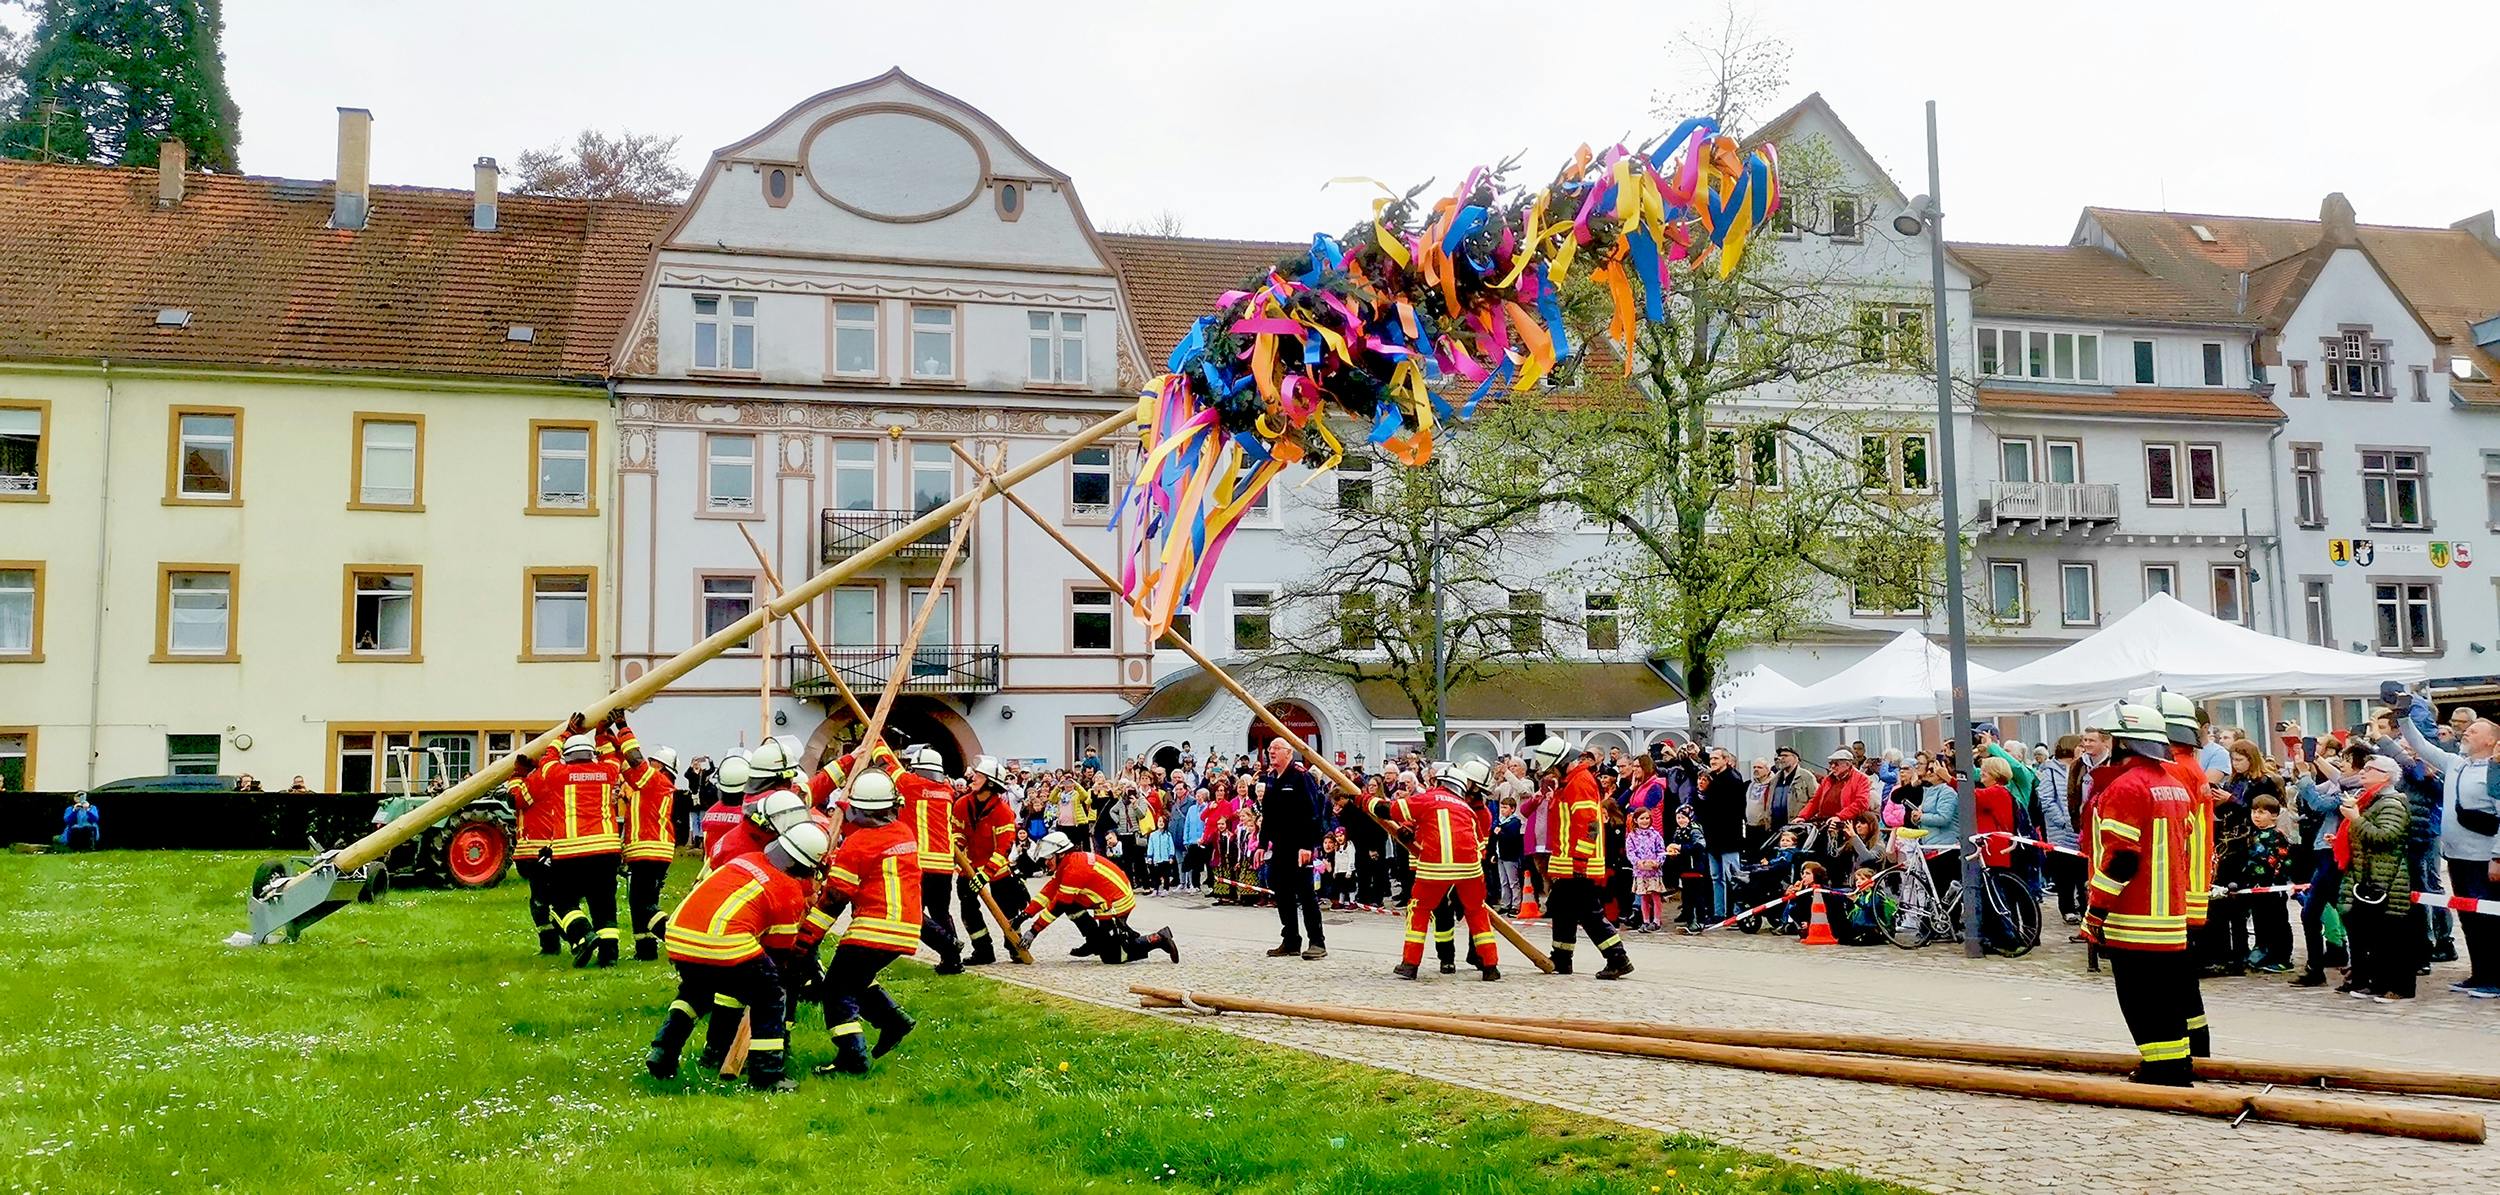 Am 30. April wird die Freiwillige Feuerwehr Bad Herrenalb um 18 Uhr den traditionellen Maibaum aufstellen. 